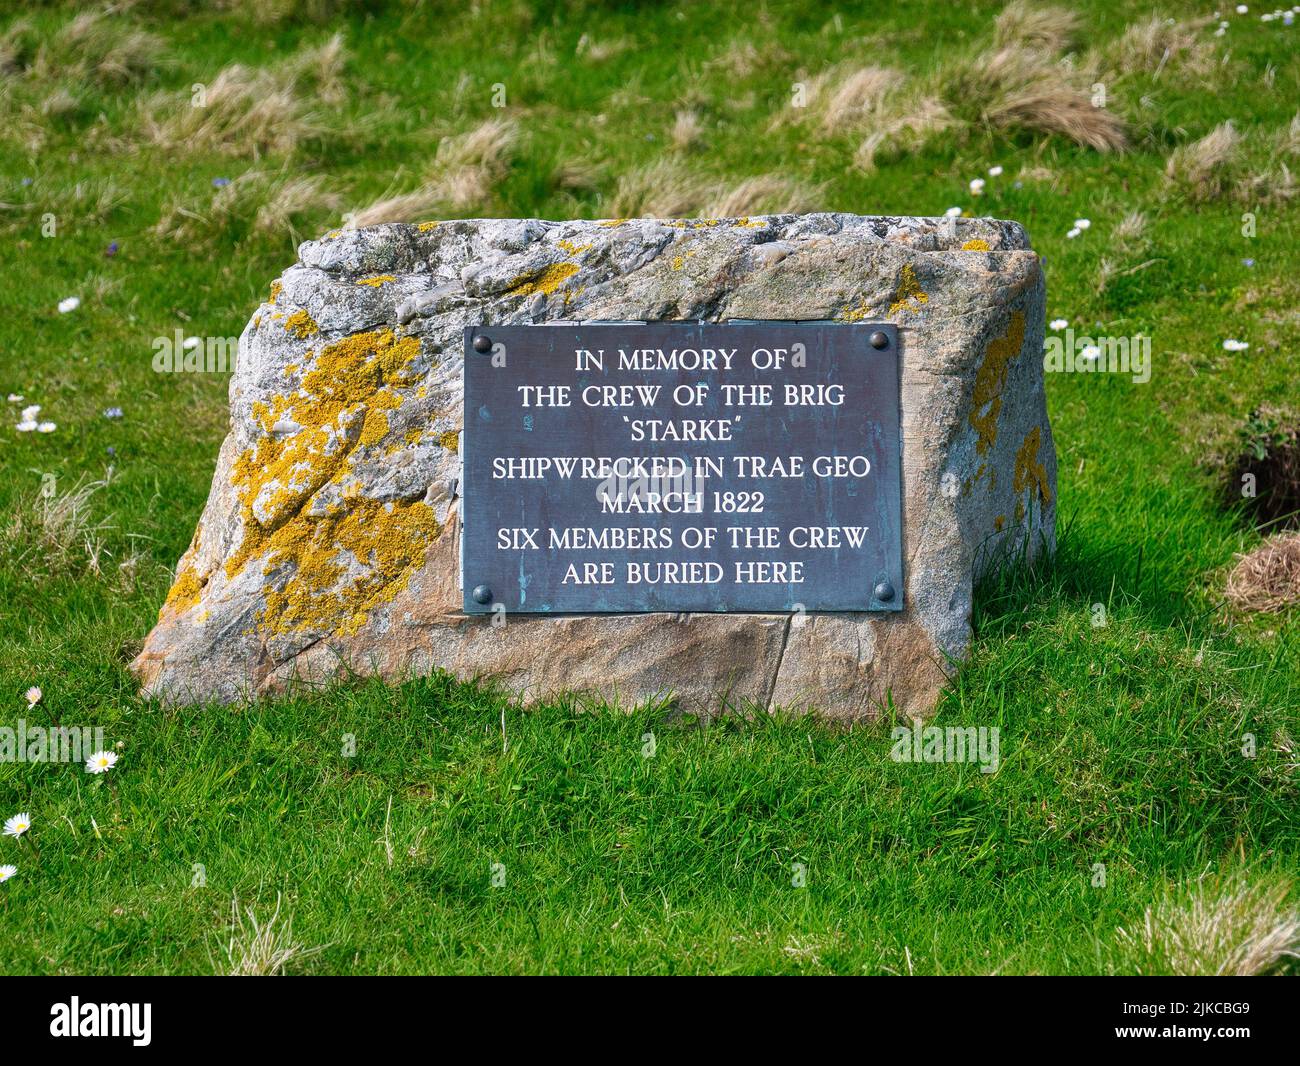 Una placa rectangular adherida a una roca marca las tumbas de seis de la tripulación que murió cuando el ala Starke naufragó cerca en 1822. Foto de stock